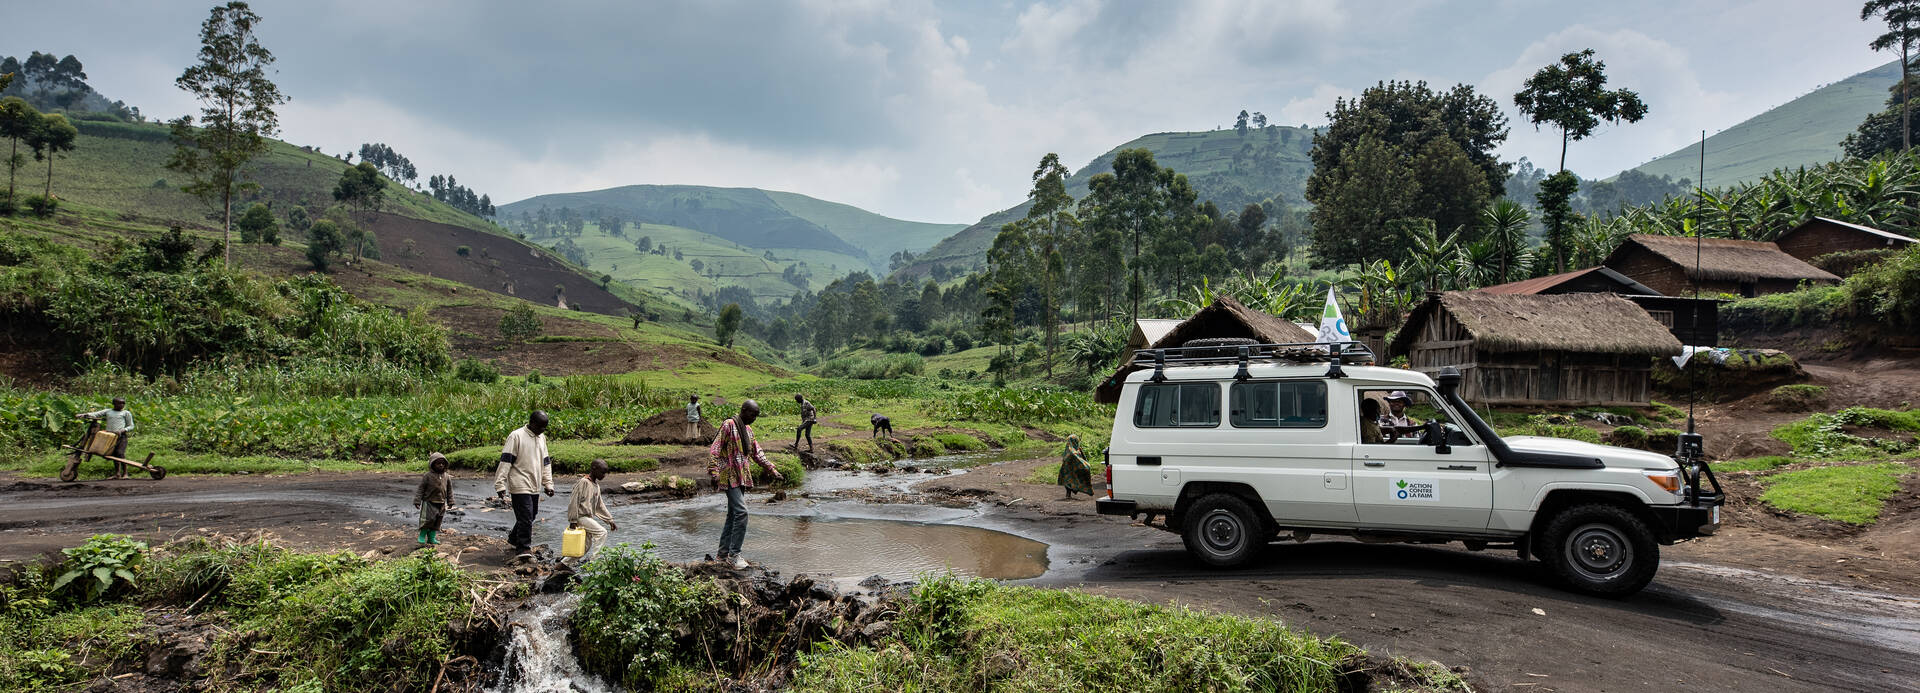 Auto von Aktion gegen den Hunger in der Demokratischen Republik Kongo